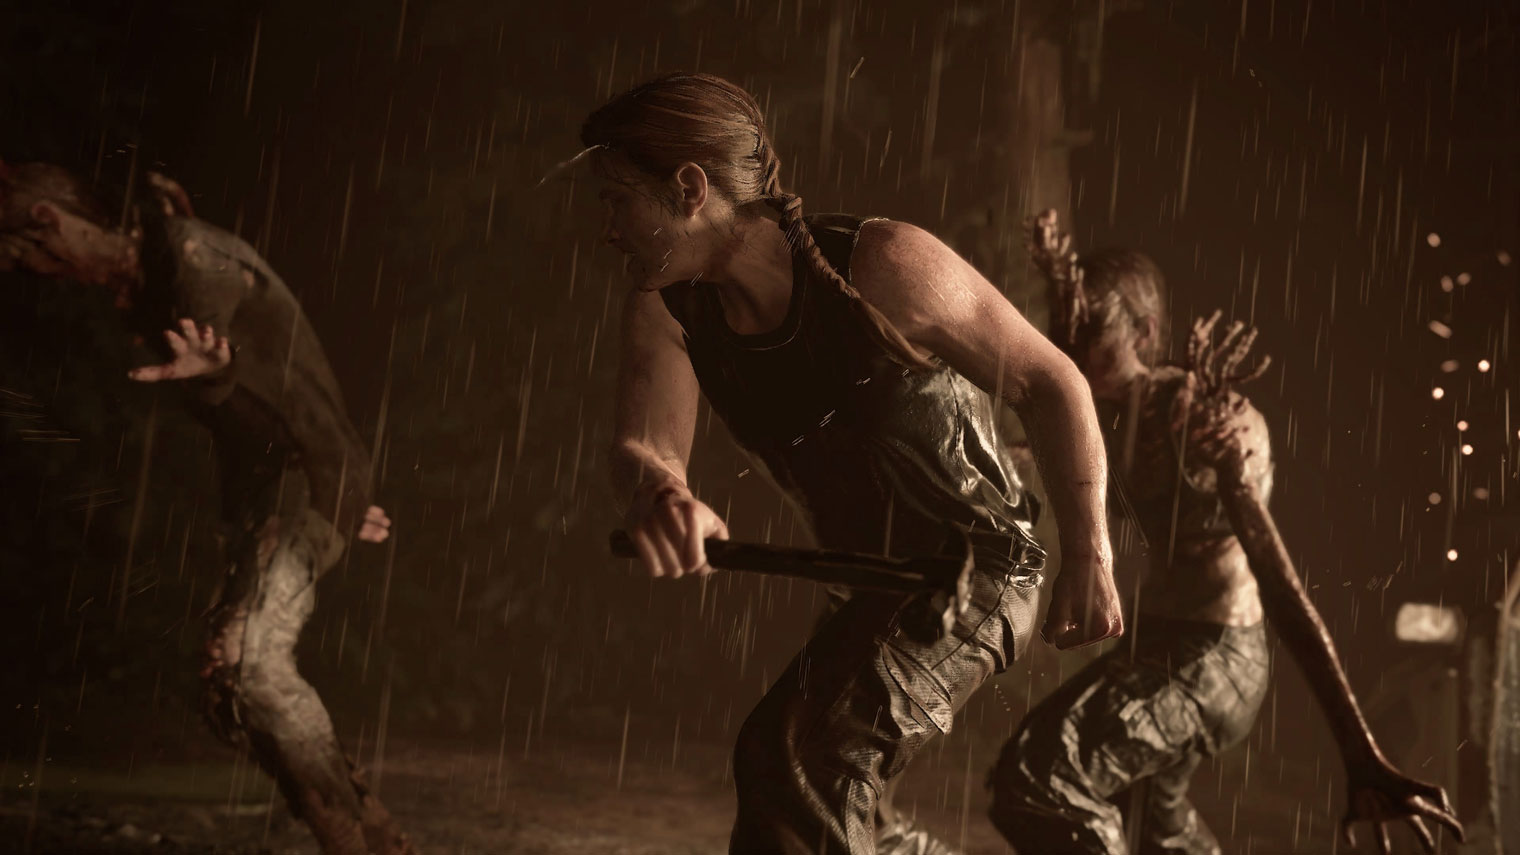 Выделить героя можно с помощью света, уведя противников в тень. Здесь динамики добавляют косые струи дождя и искры на заднем плане. Кадр: Sony Interactive Entertainment / The Last of Us Part 2